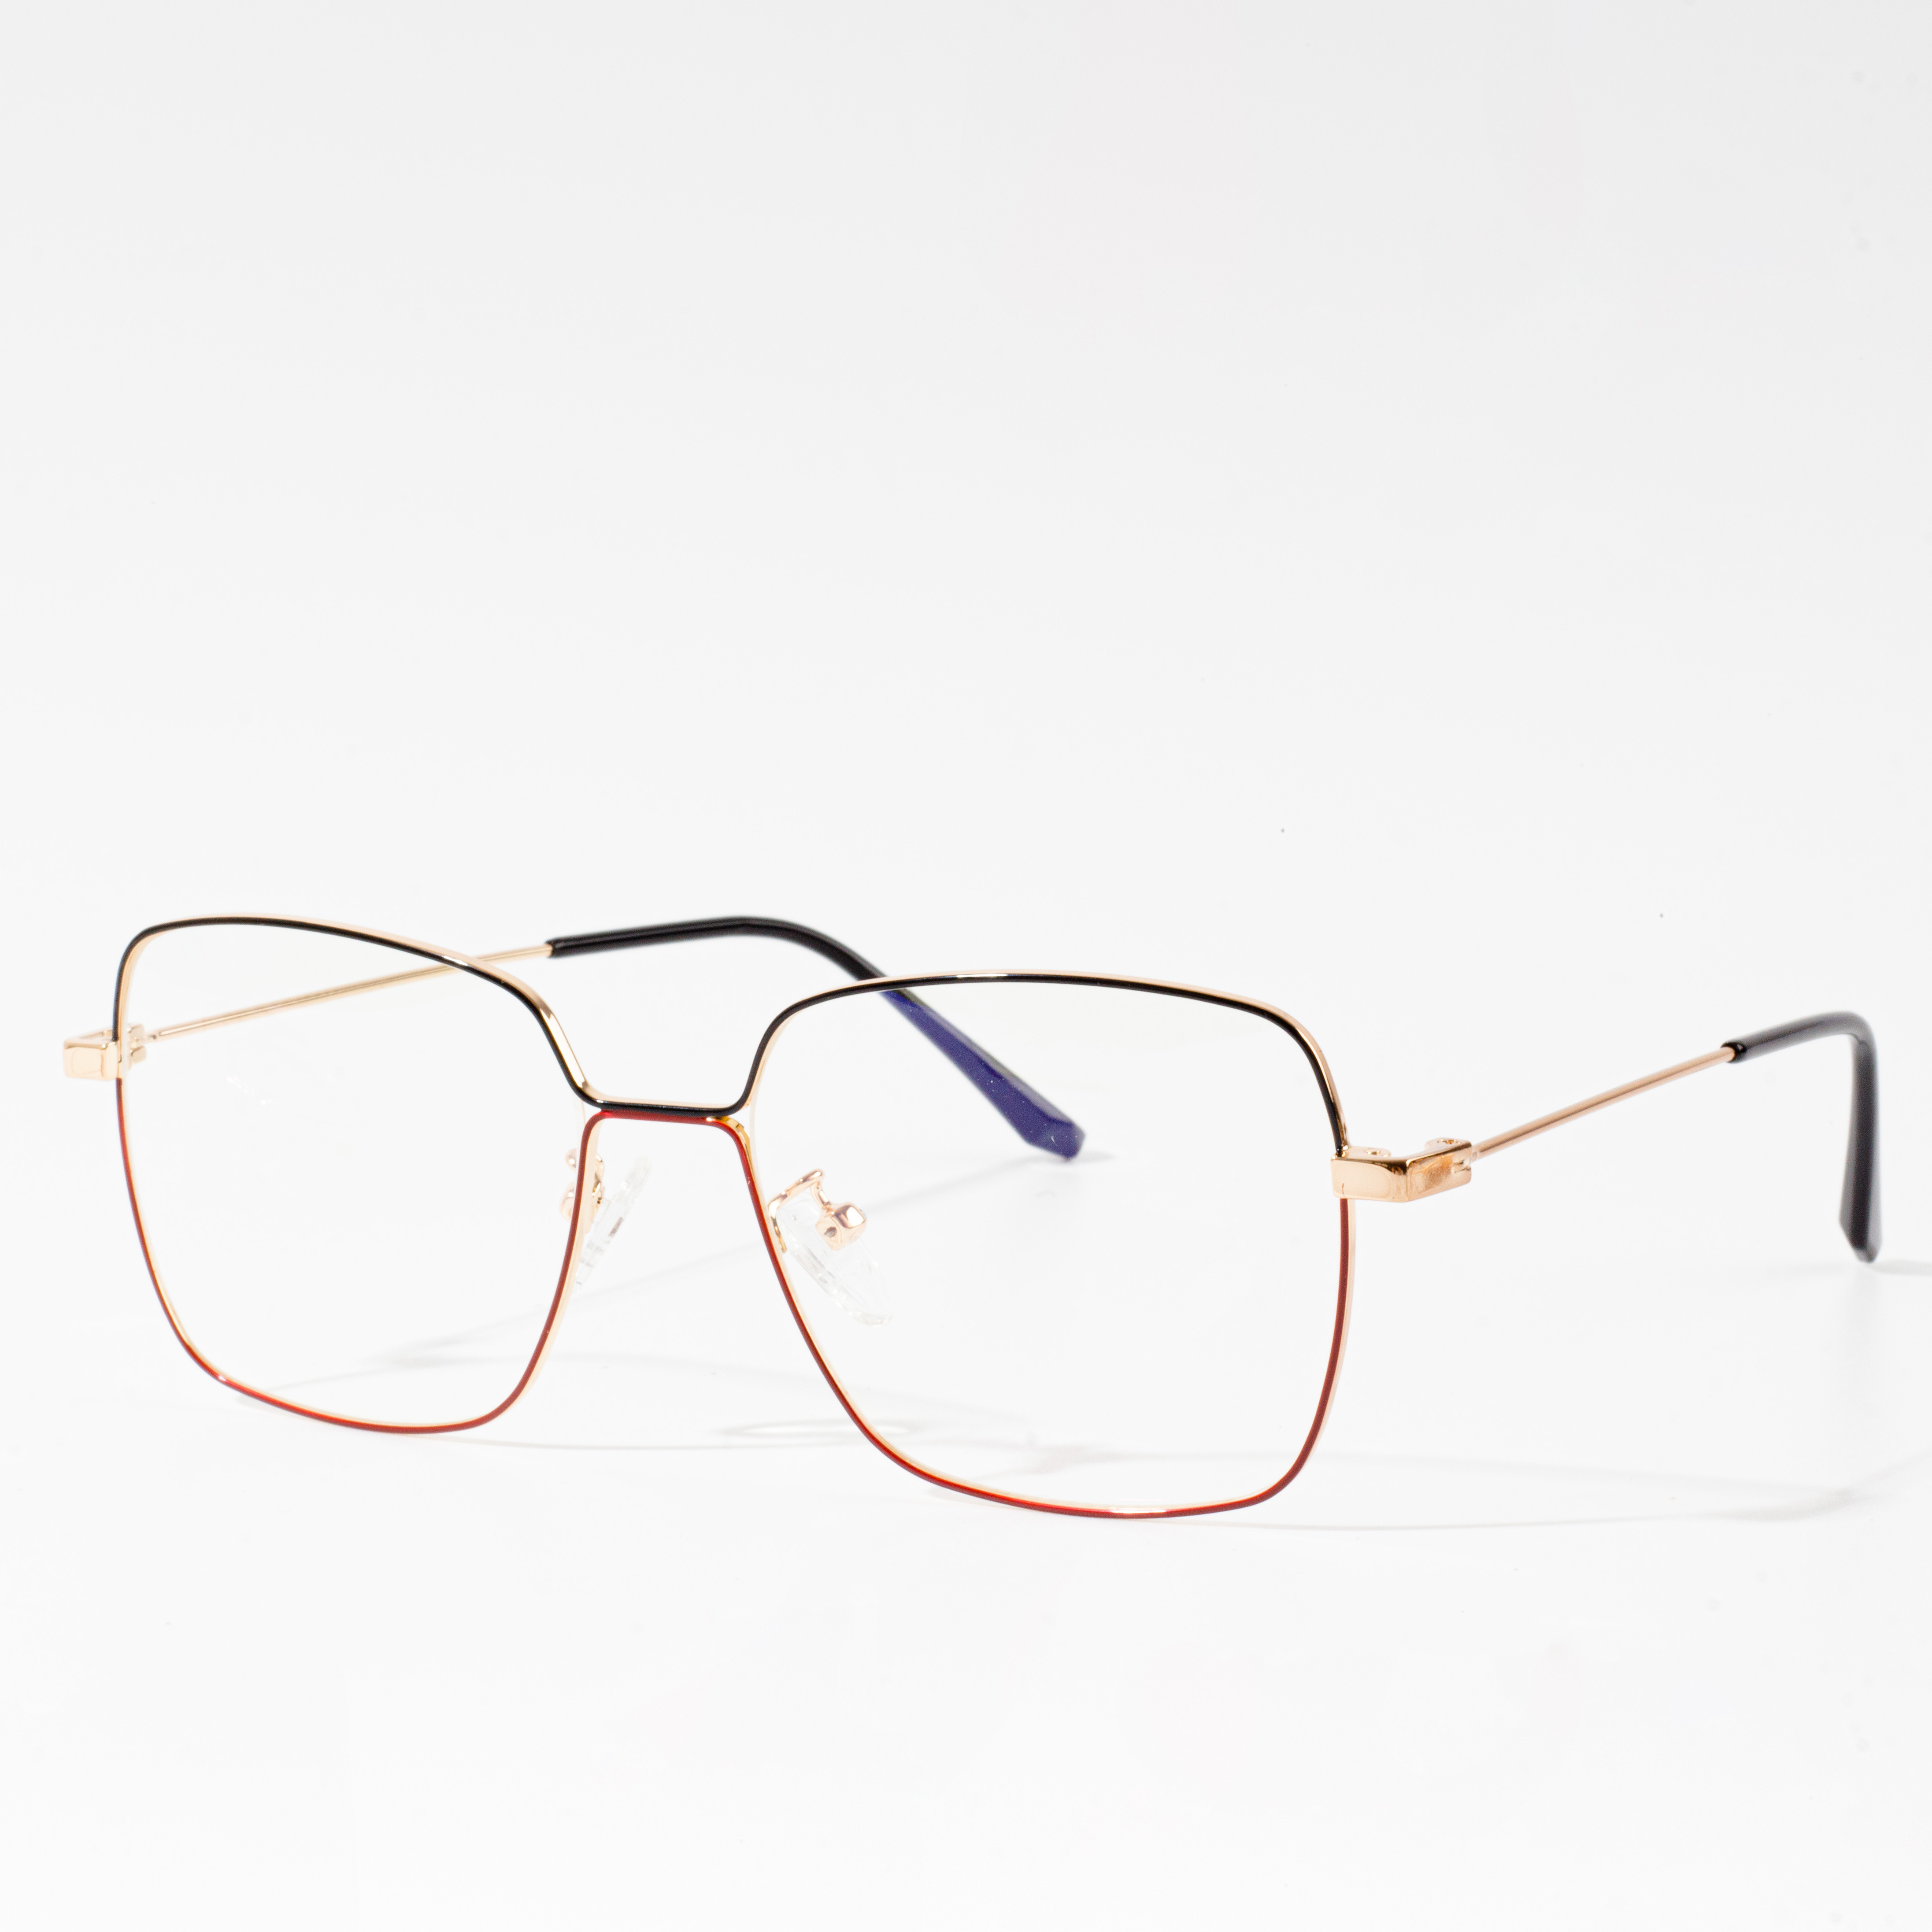 eyeglass frame sizes